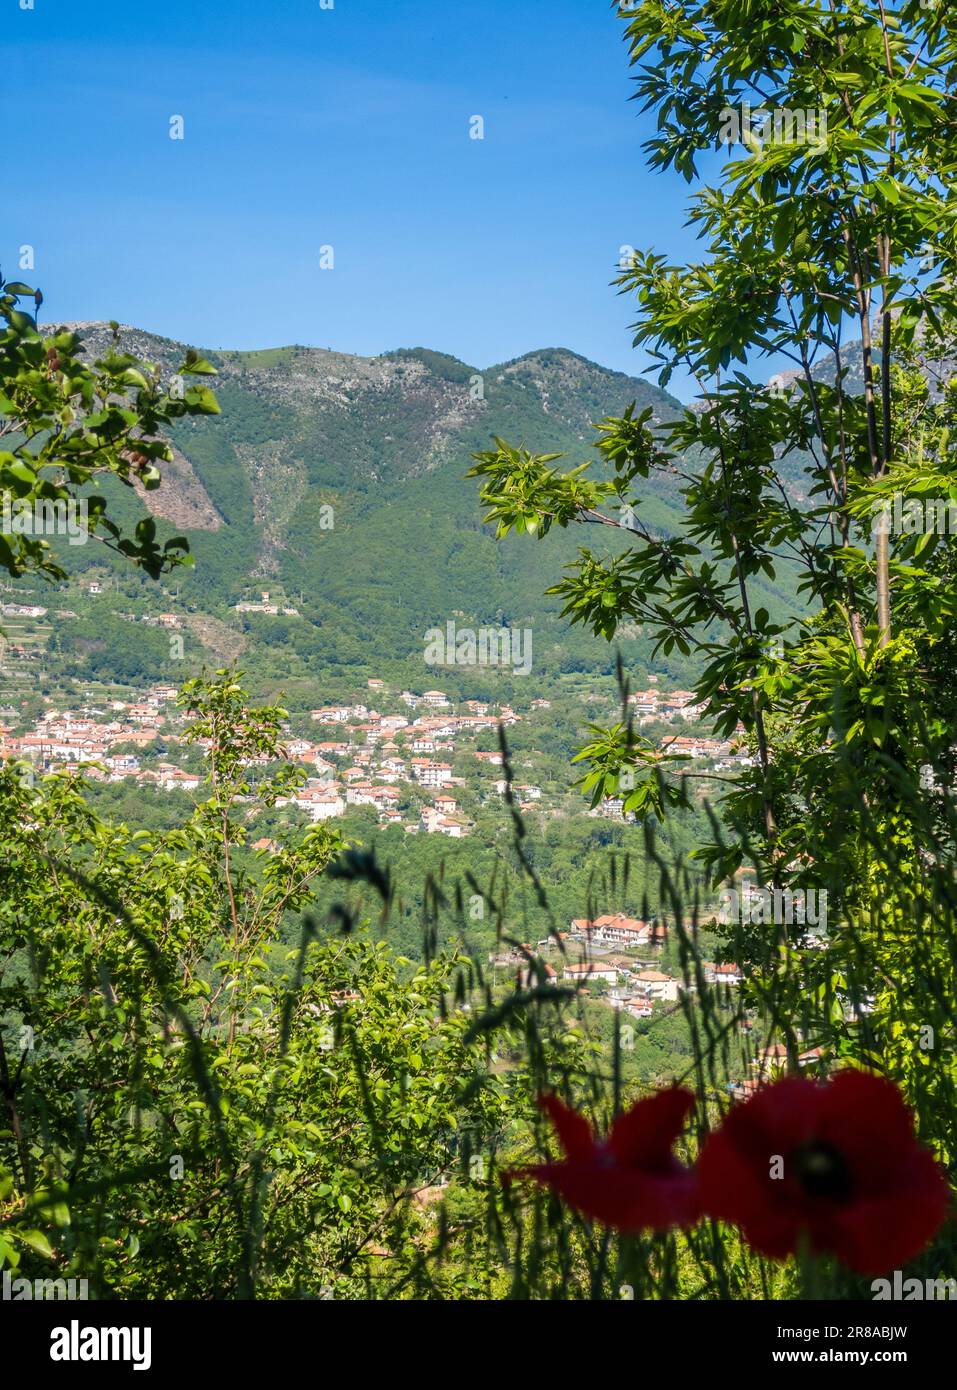 Vue sur les collines autour de San Lazzaro au-dessus d'Amalfi, Salerne dans la région de Campanie, Italie Banque D'Images